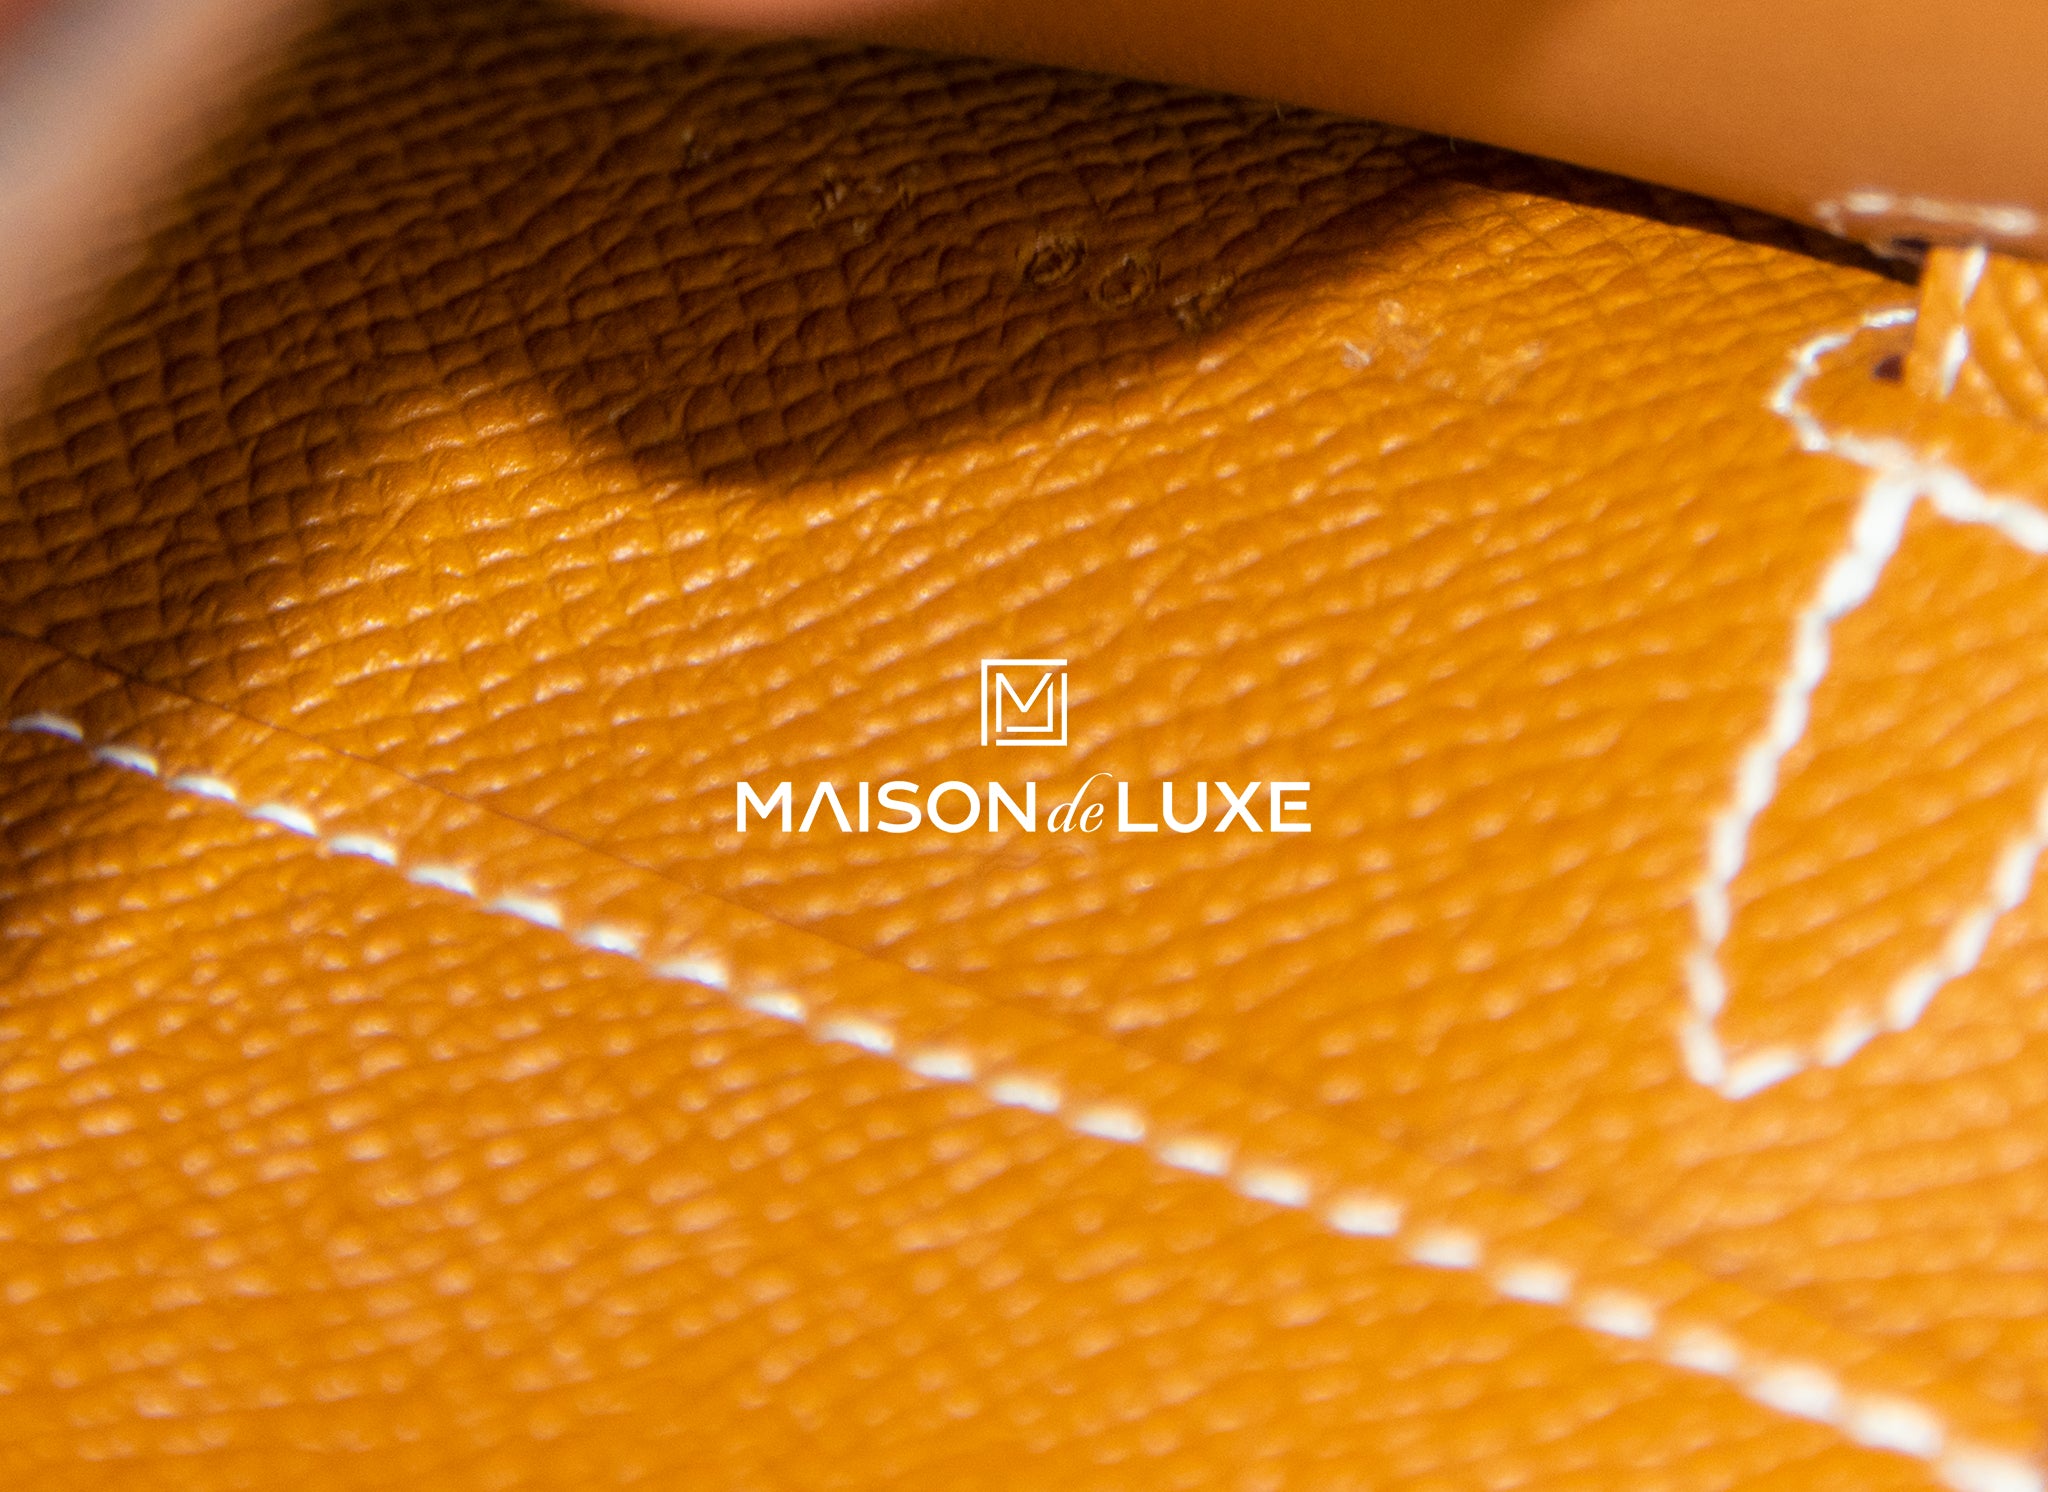 Hermès - Hermès Kelly to Go Epsom Leather Long Wallet Shoulder Bag-Gold Gold Hardware